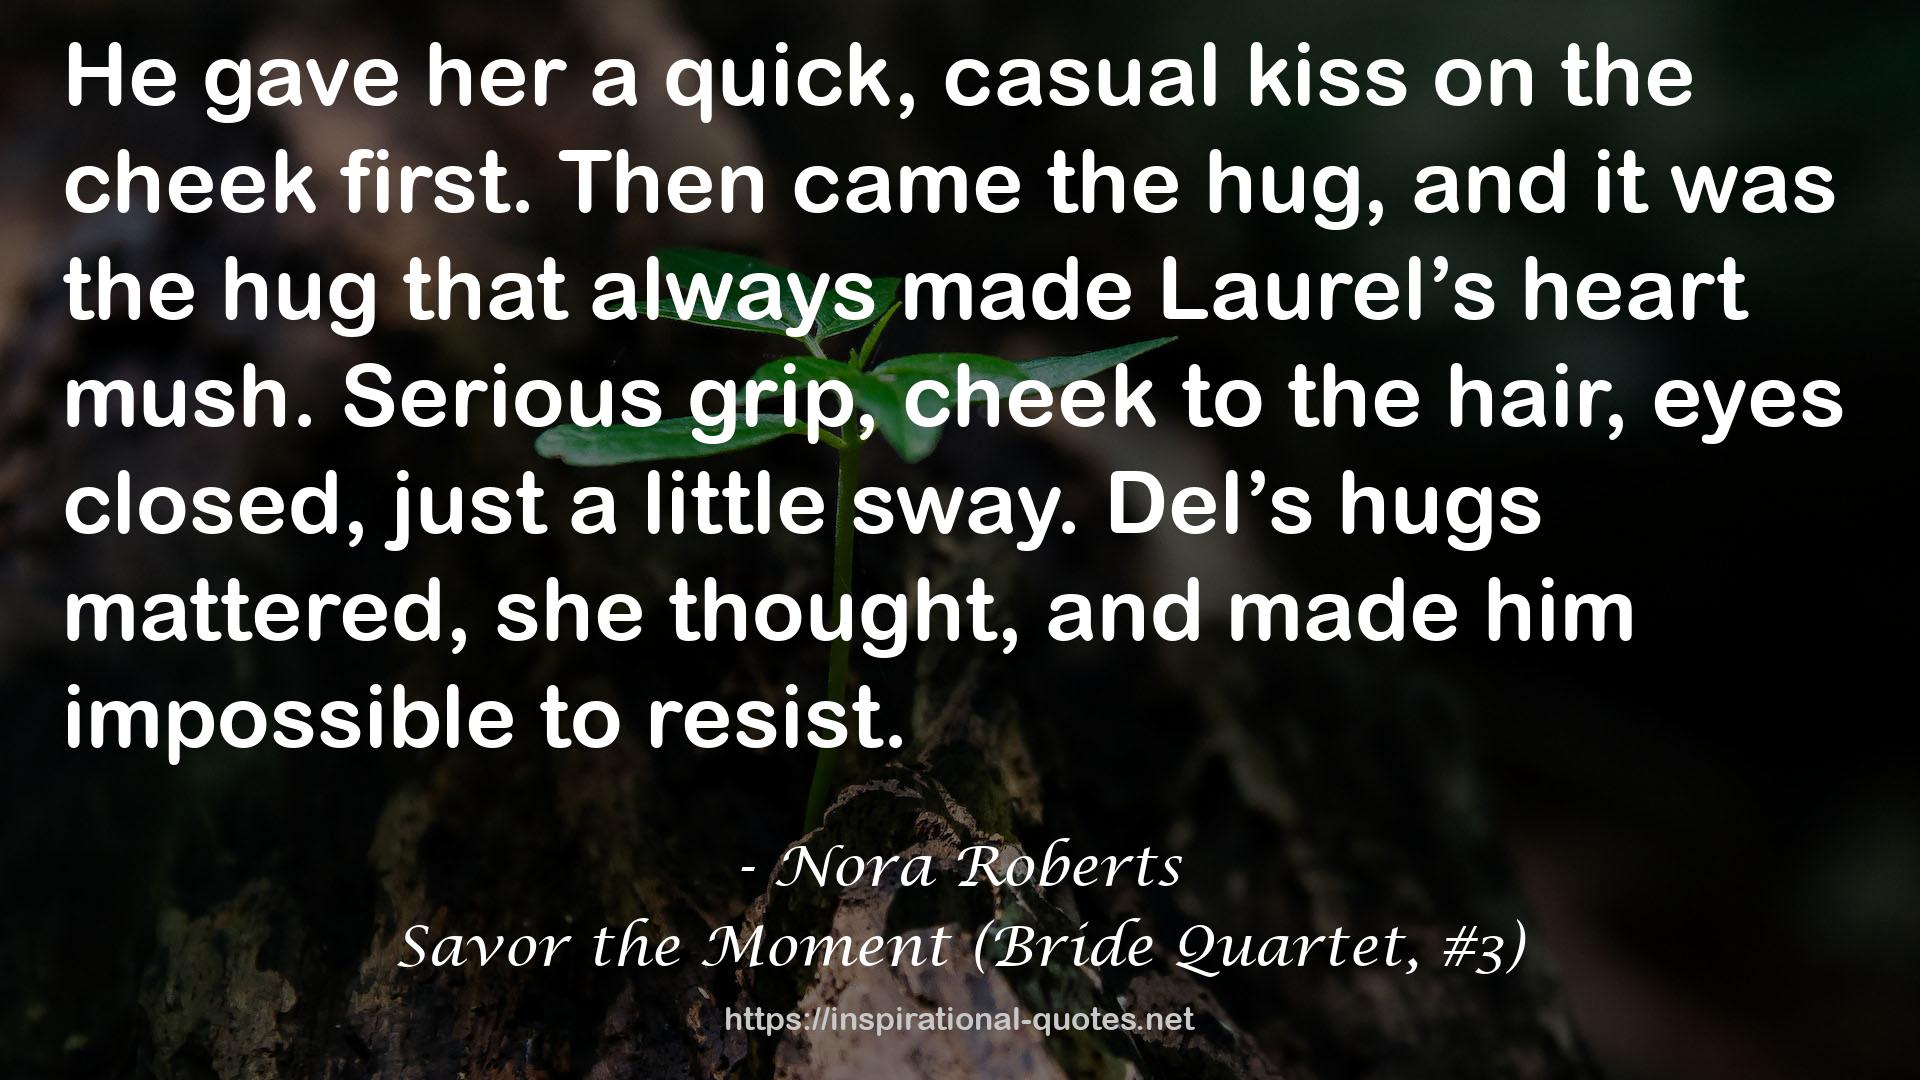 Savor the Moment (Bride Quartet, #3) QUOTES